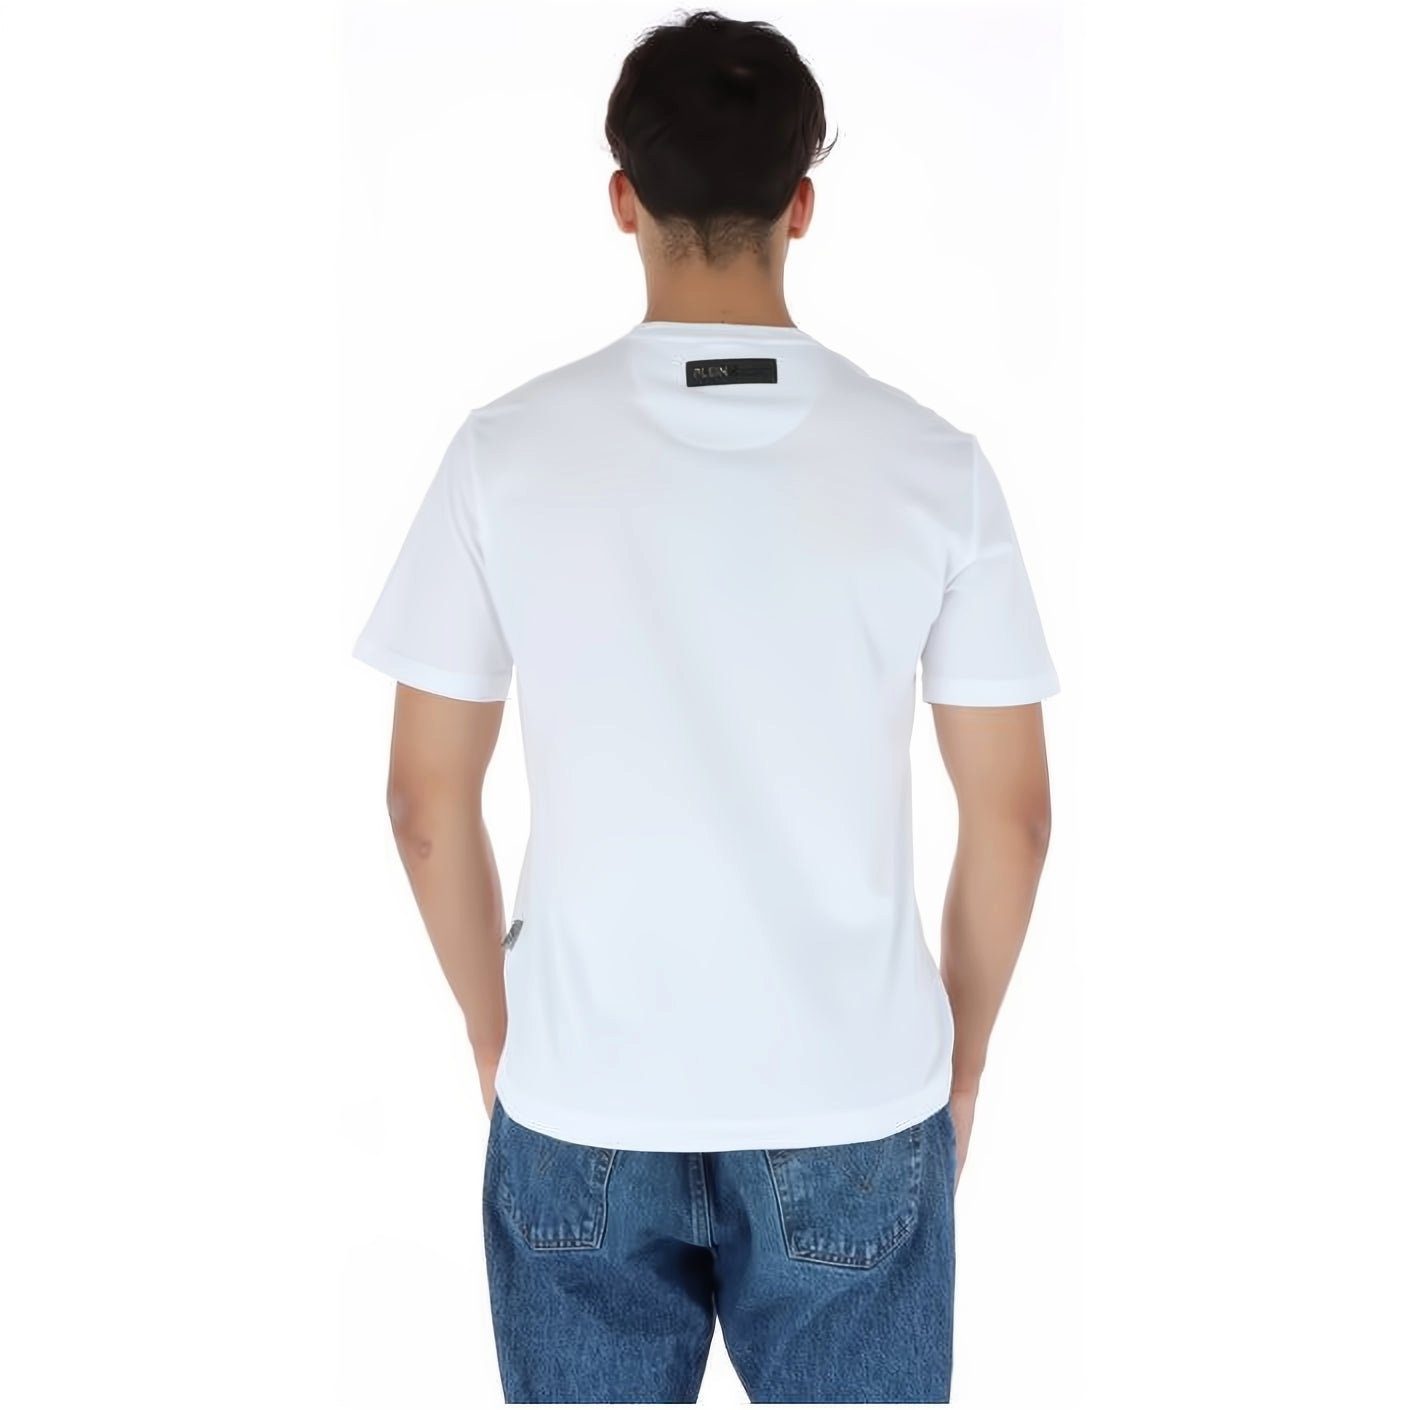 PLEIN SPORT T-Shirt ROUND NECK hoher Farbauswahl vielfältige Stylischer Look, Tragekomfort